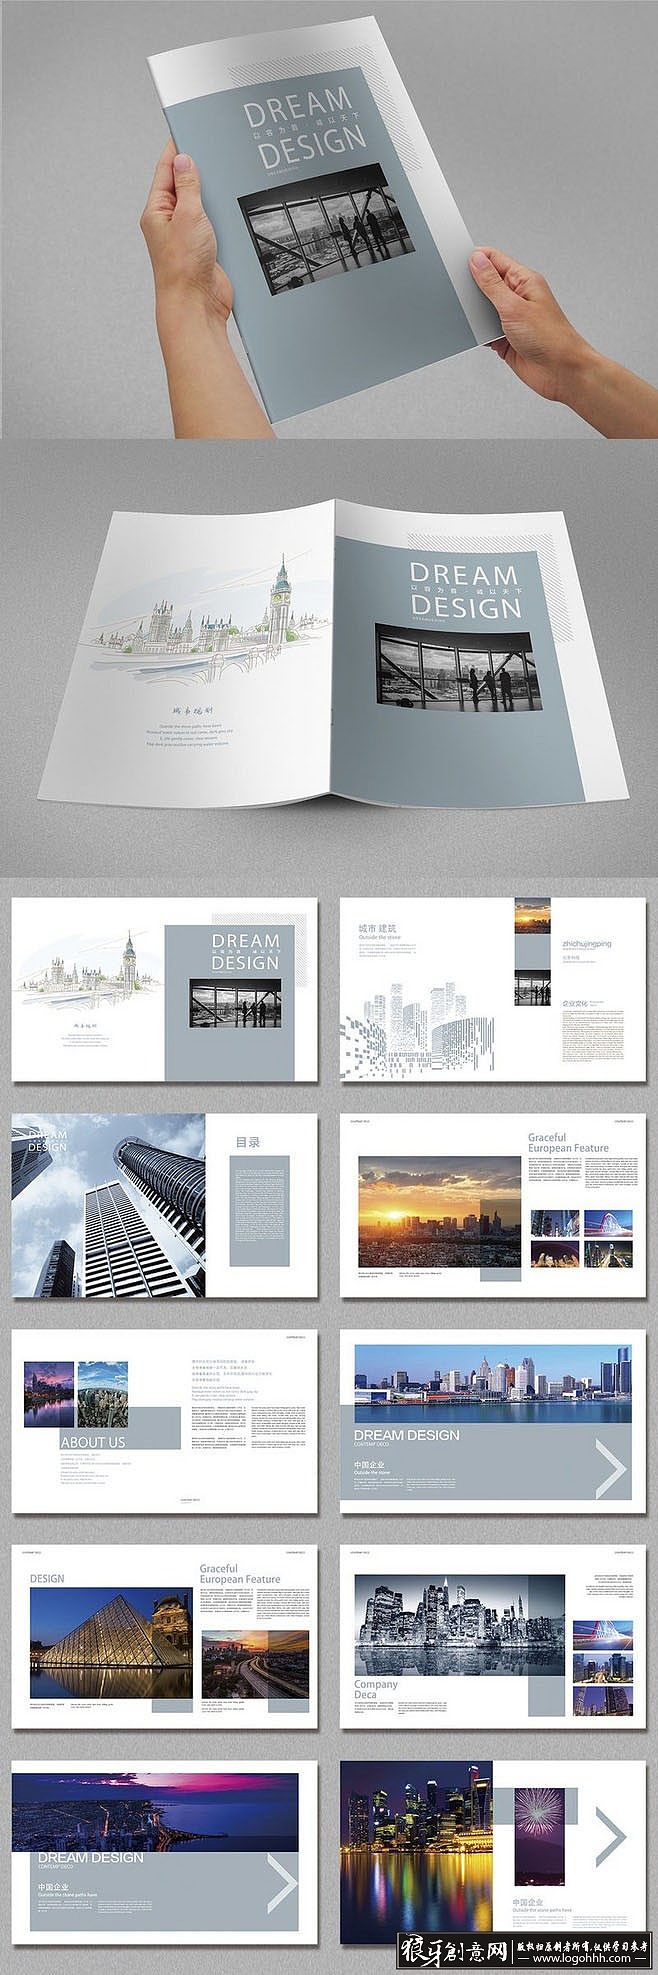 企业画册印刷报价_企业画册宣传册设计印刷_深圳企业画册印刷